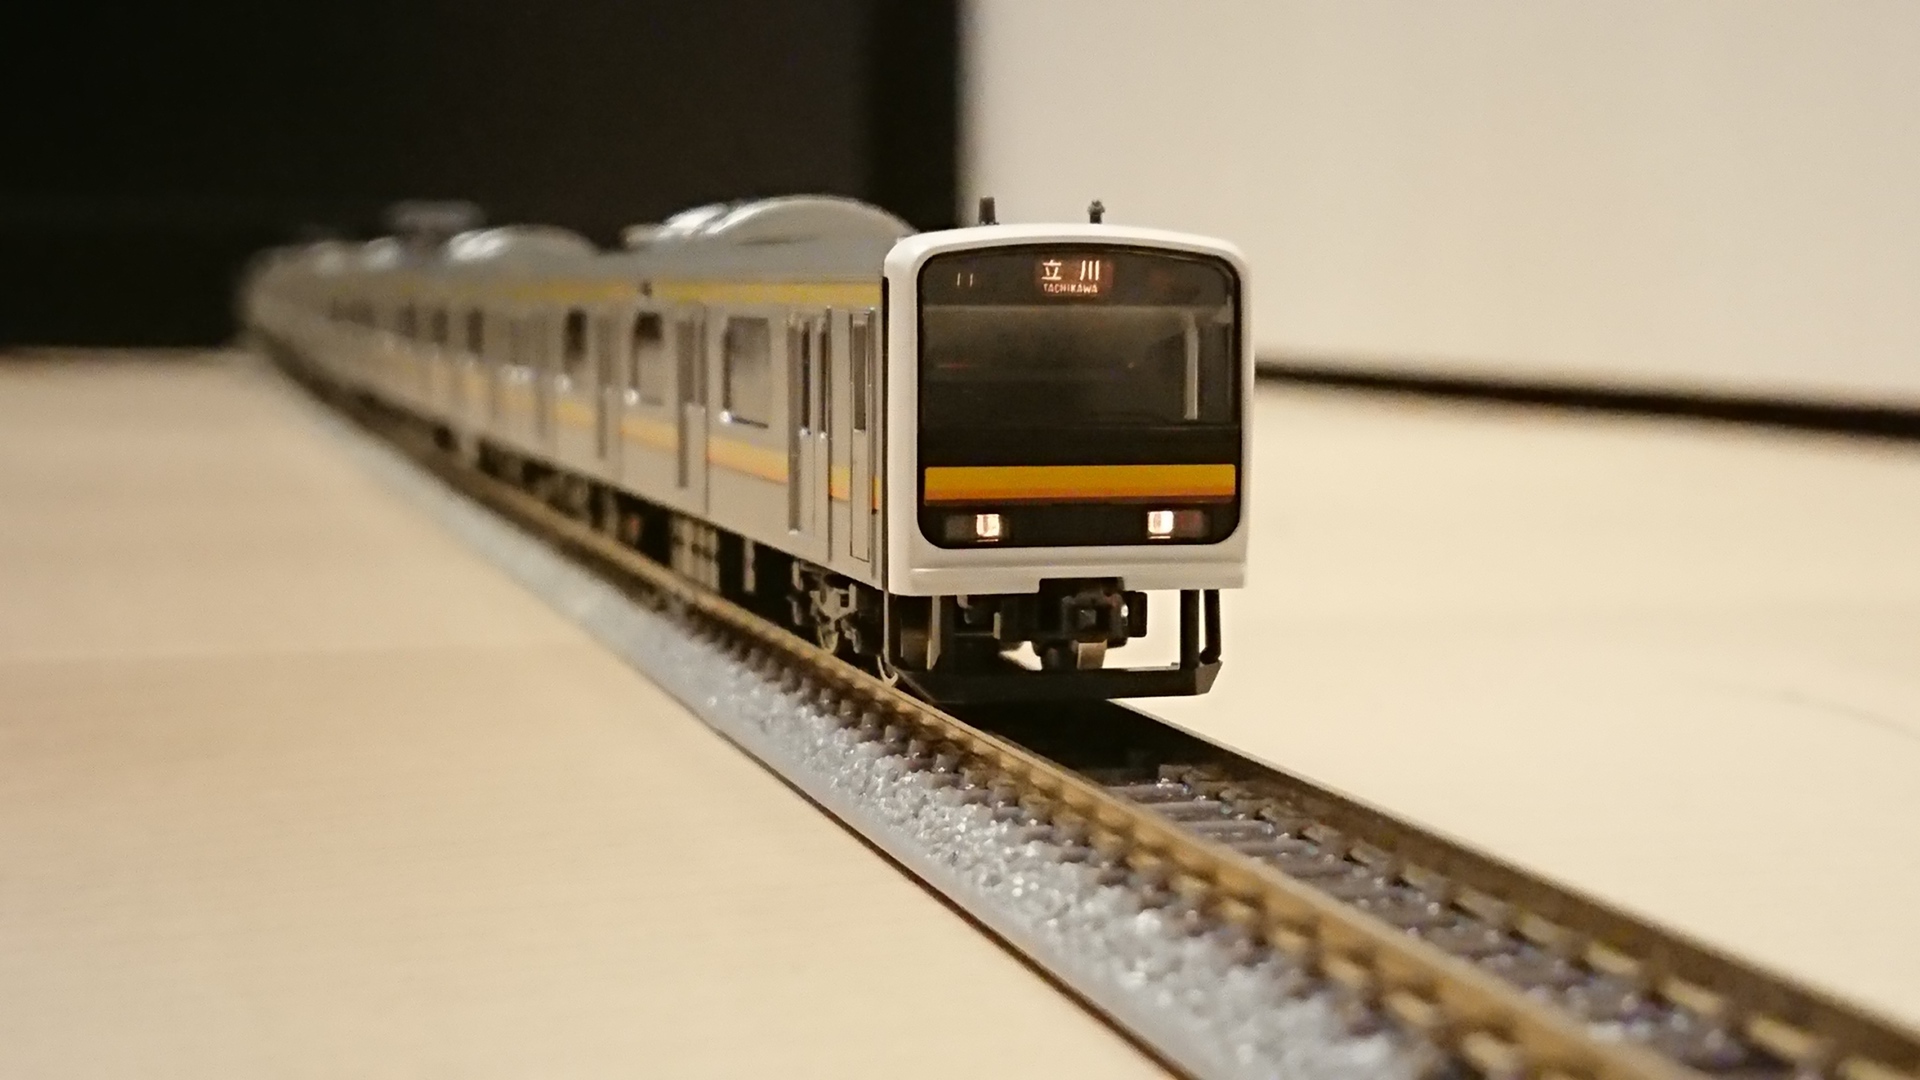 登場! TOMIX Nゲージ (鉄道模型) (南武線) 209系 - 南武線 セット JR